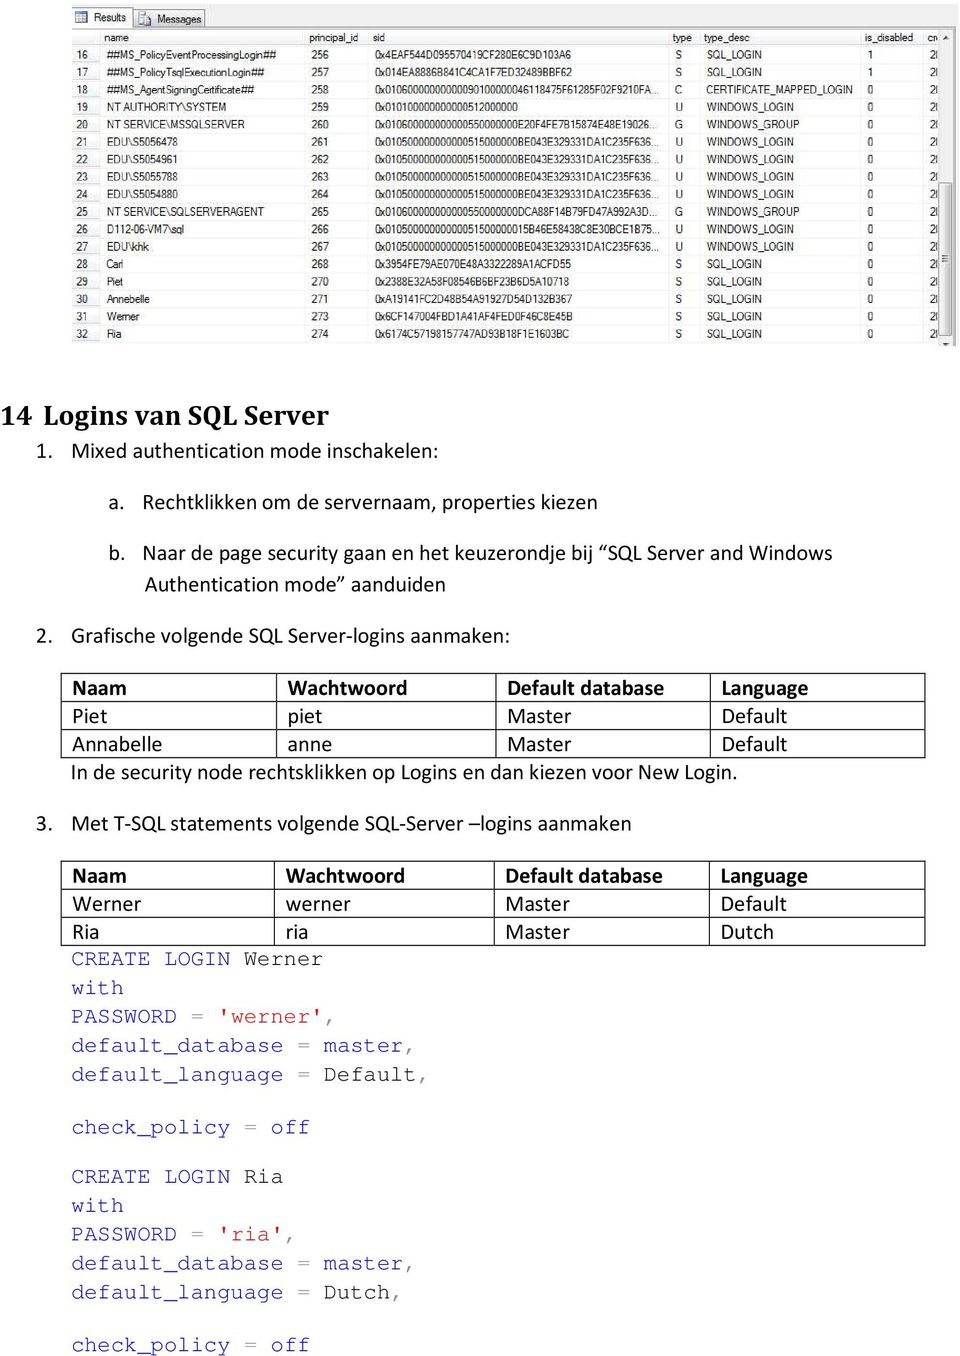 Grafische volgende SQL Server-logins aanmaken: Naam Wachtwoord Default database Language Piet piet Master Default Annabelle anne Master Default In de security node rechtsklikken op Logins en dan